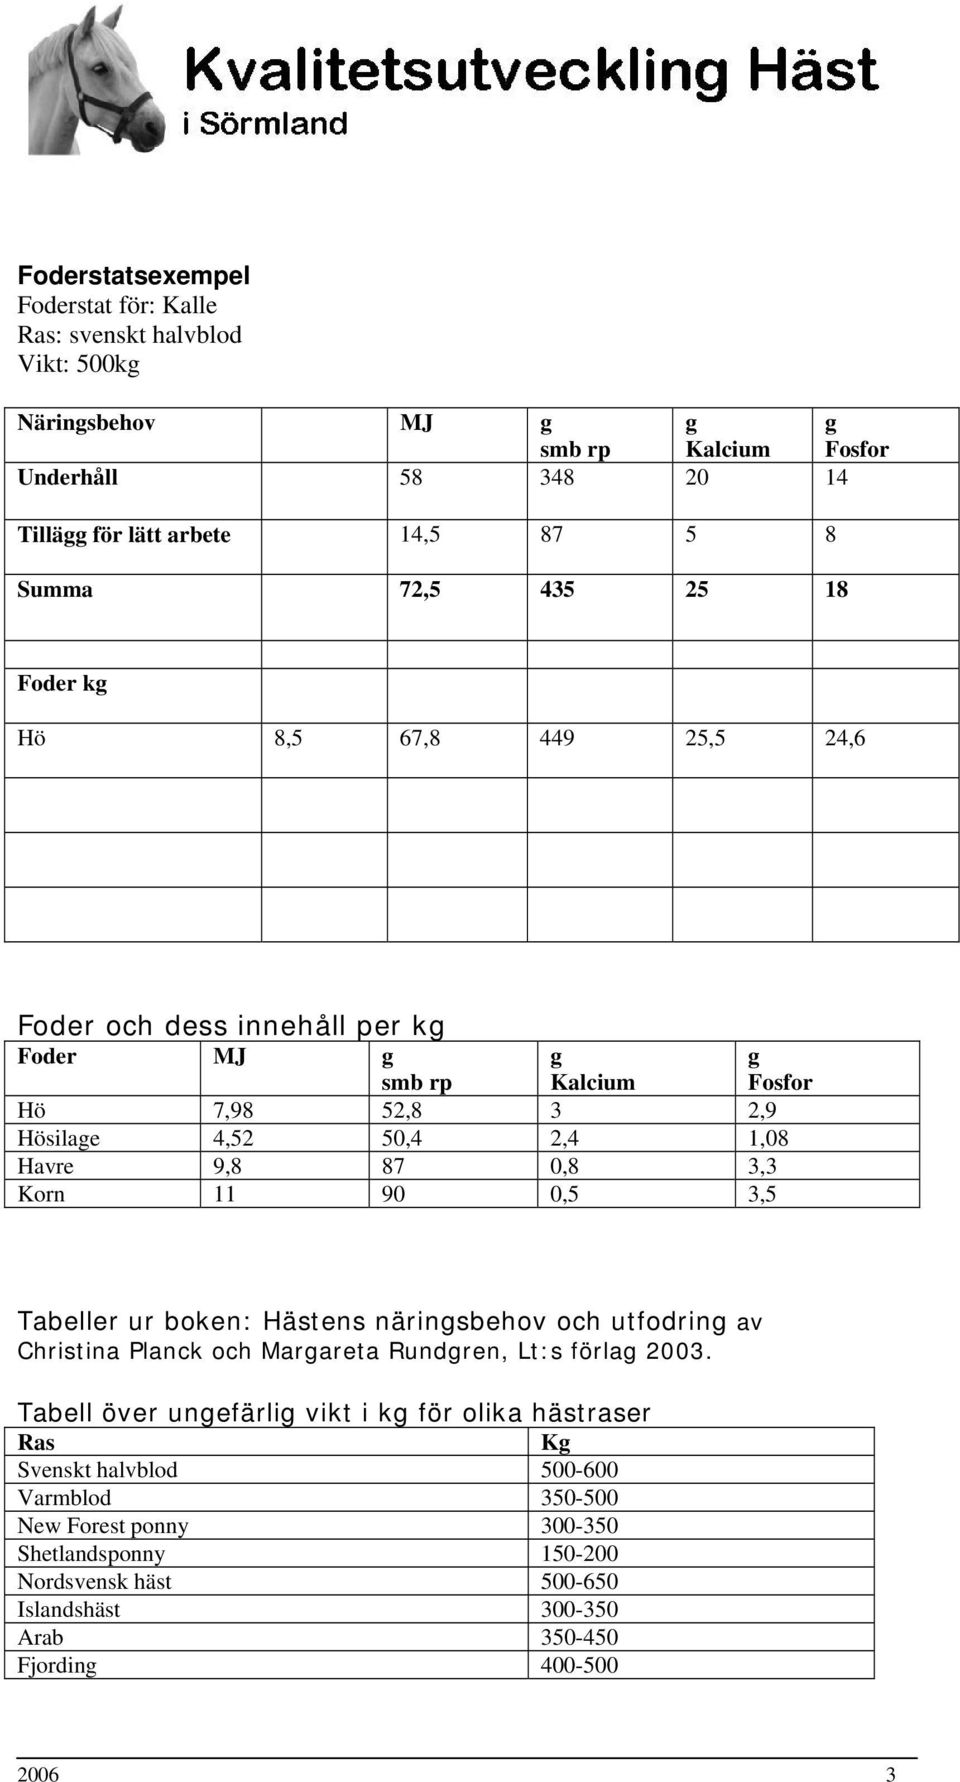 11 90 0,5 3,5 Fosfor Tabeller ur boken: Hästens närinsbehov och utfodrin av Christina Planck och Marareta Rundren, Lt:s förla 2003.